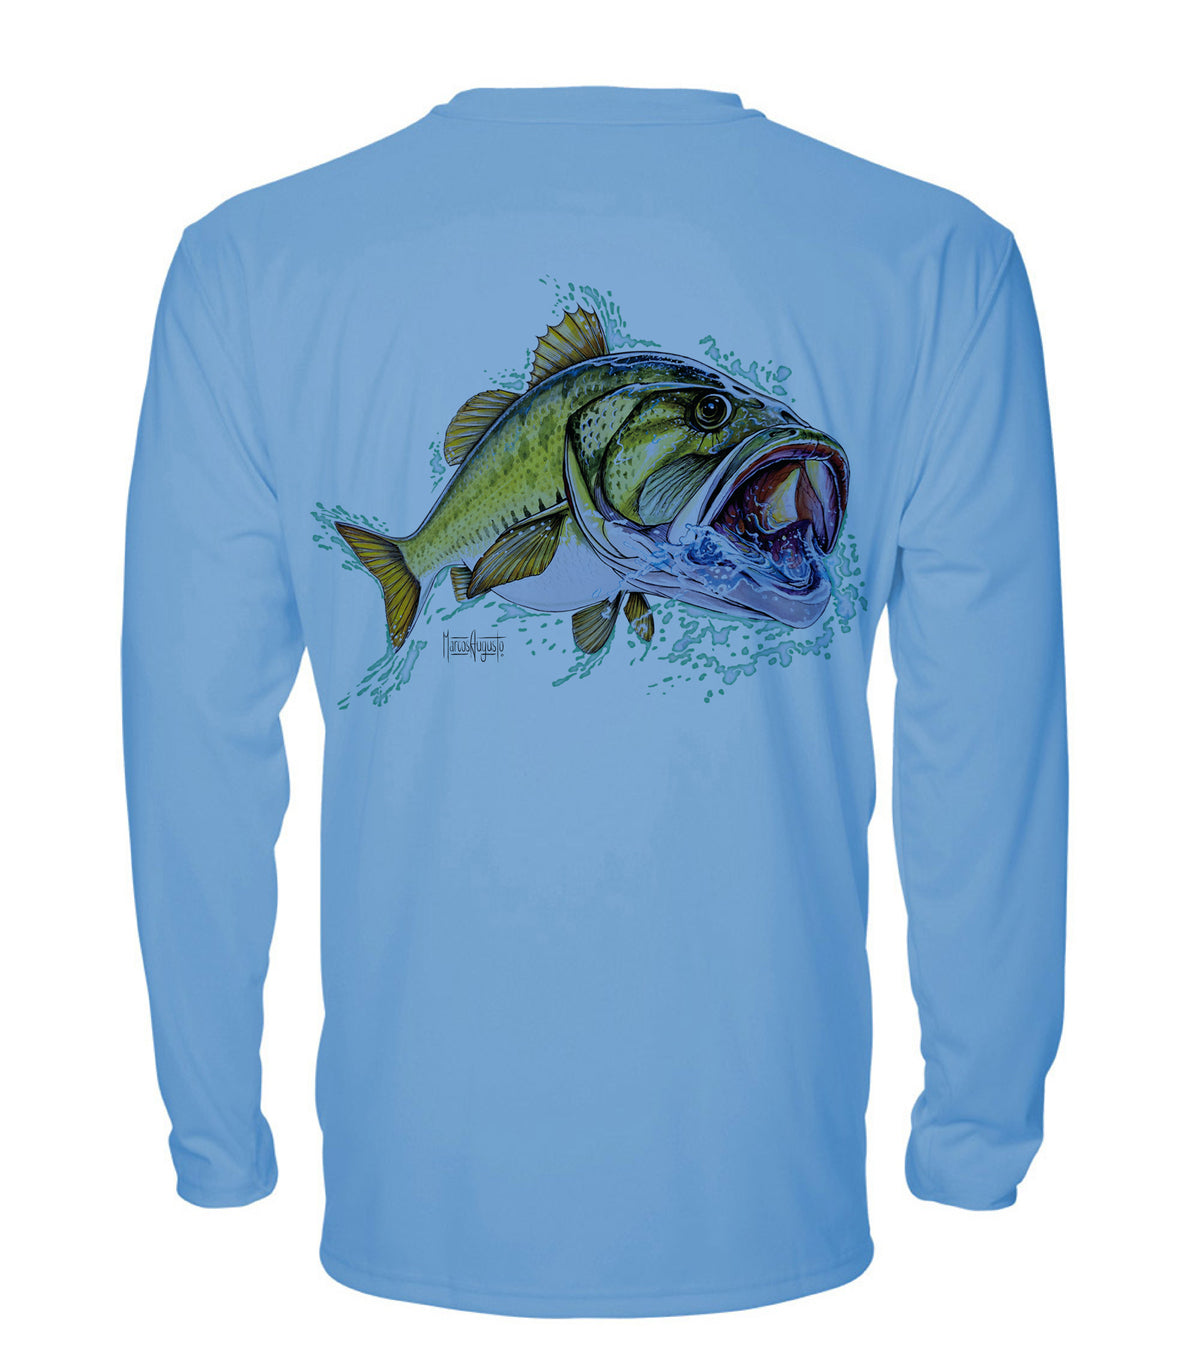 Bass Pro Shop Performance Fishing Sun Shirt Blue XL Long Creek